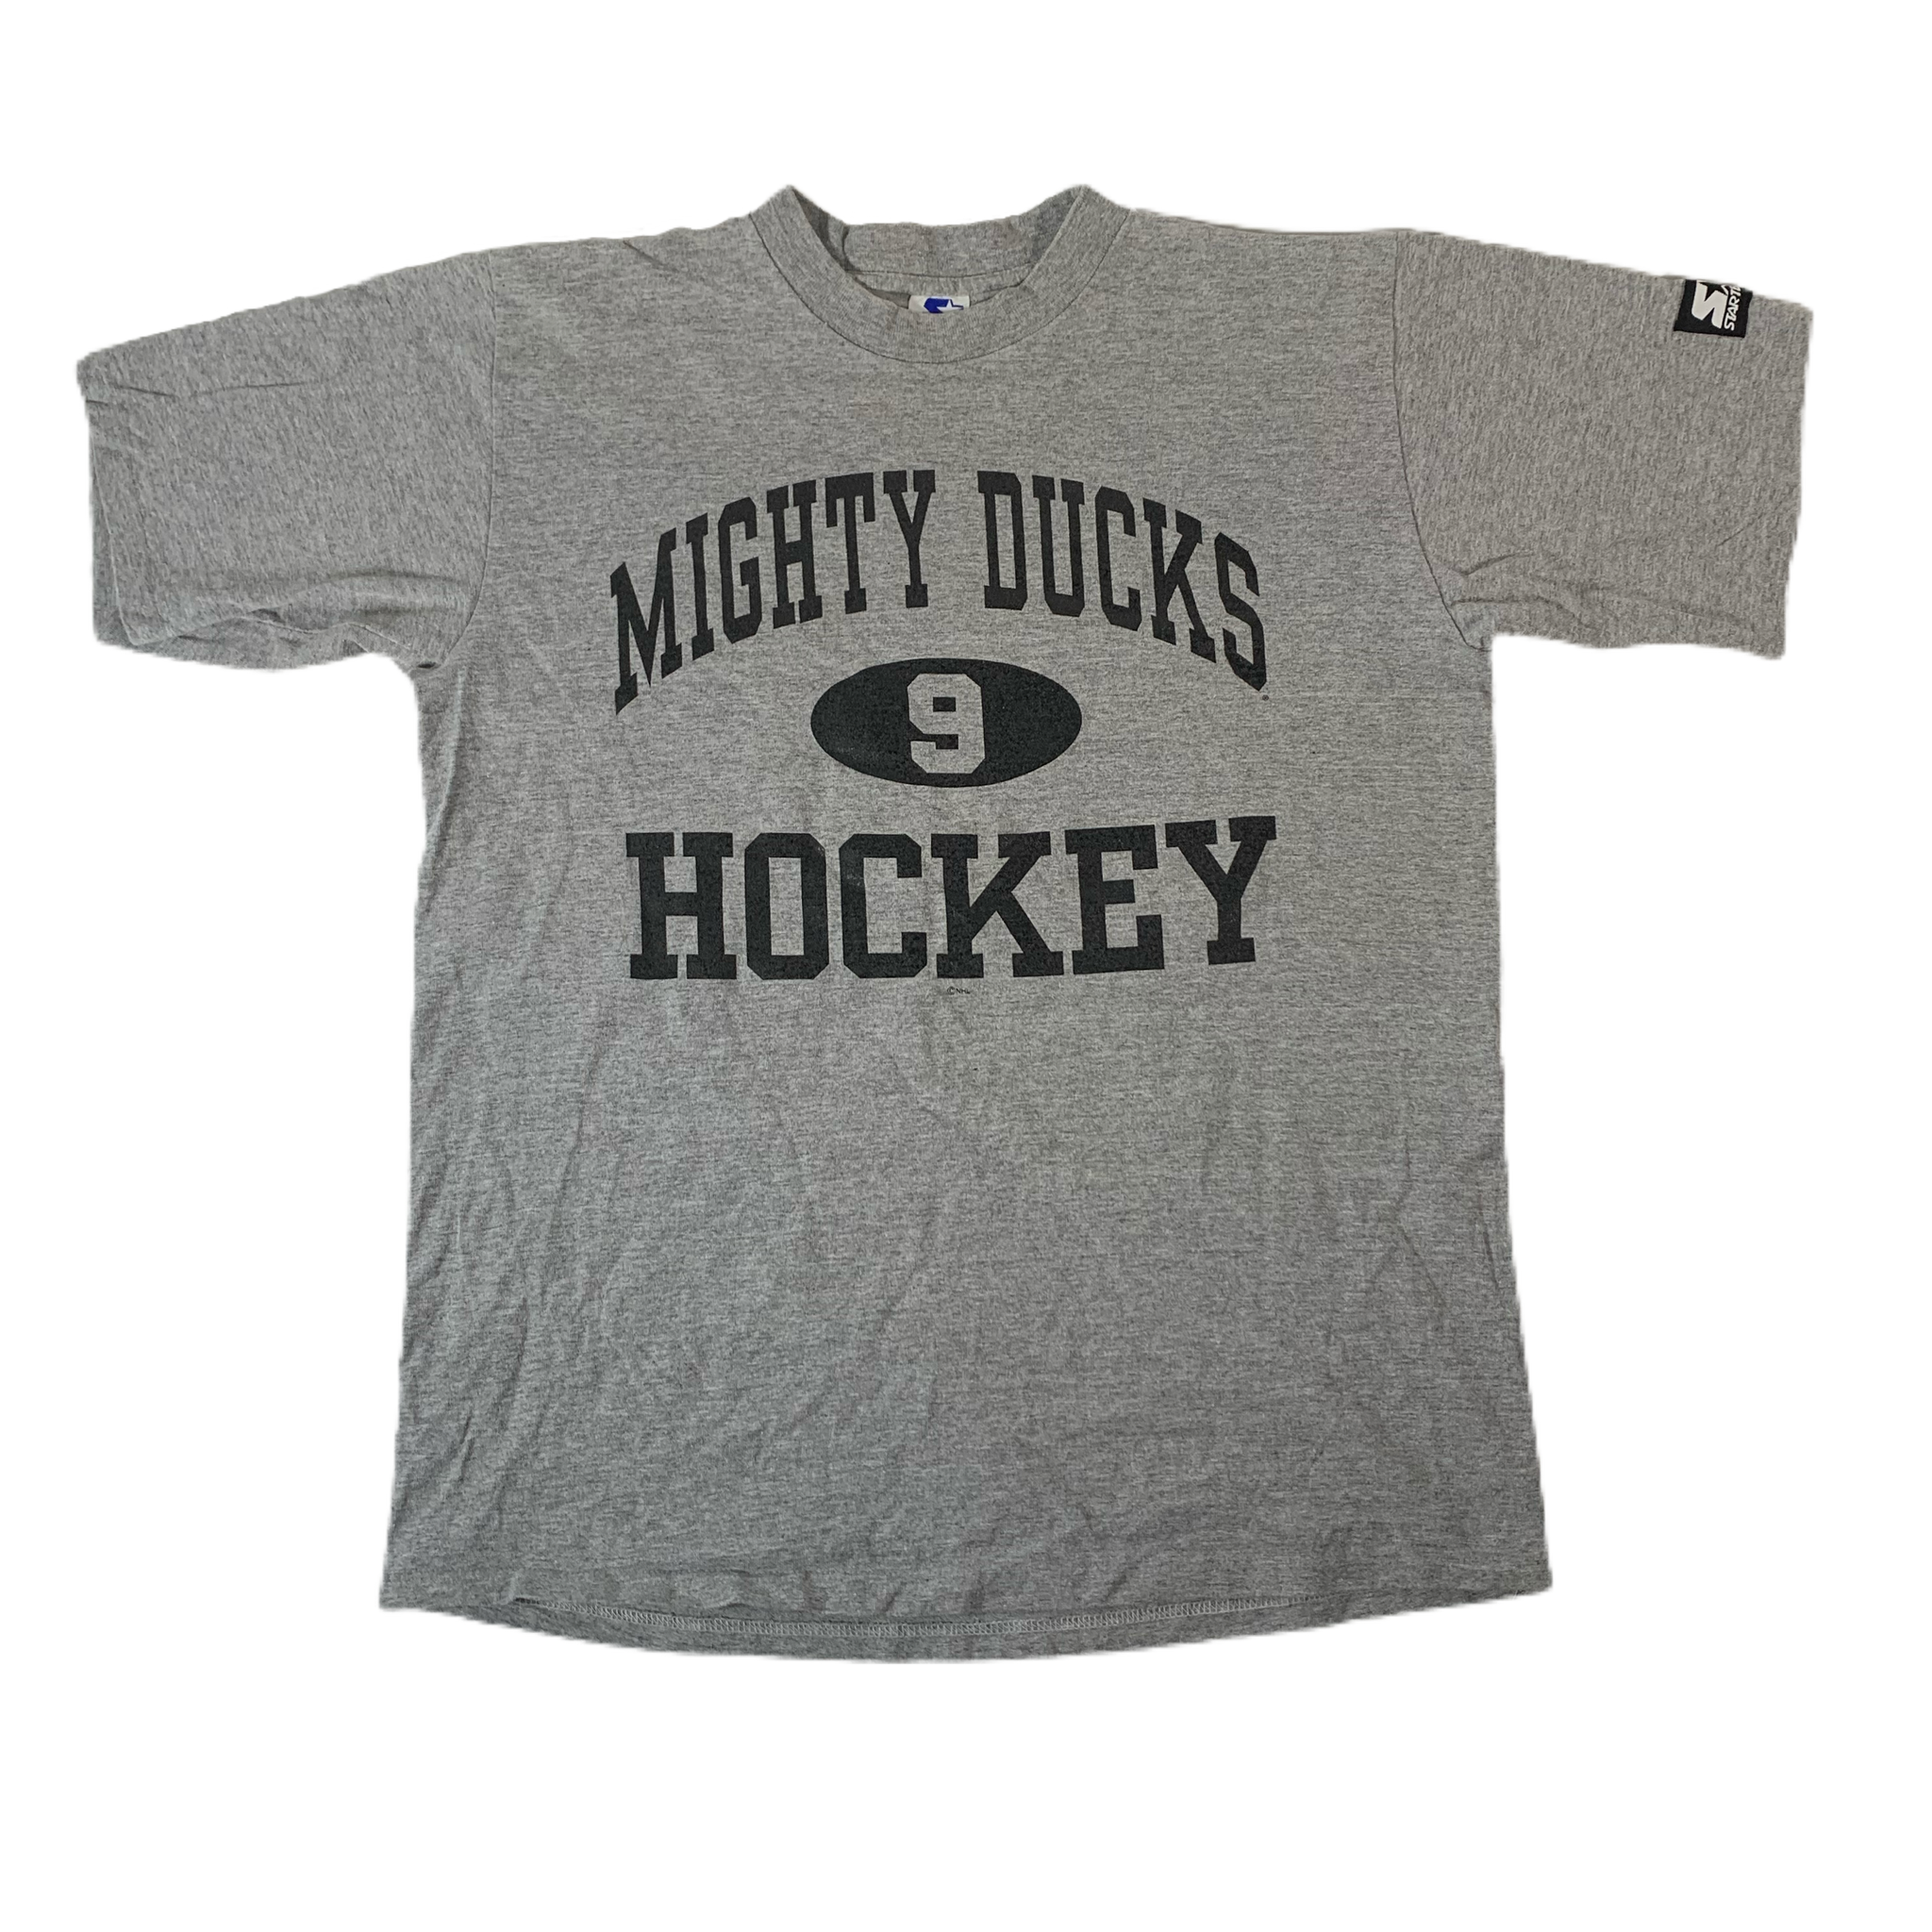 Vintage Anaheim Ducks Jersey Small